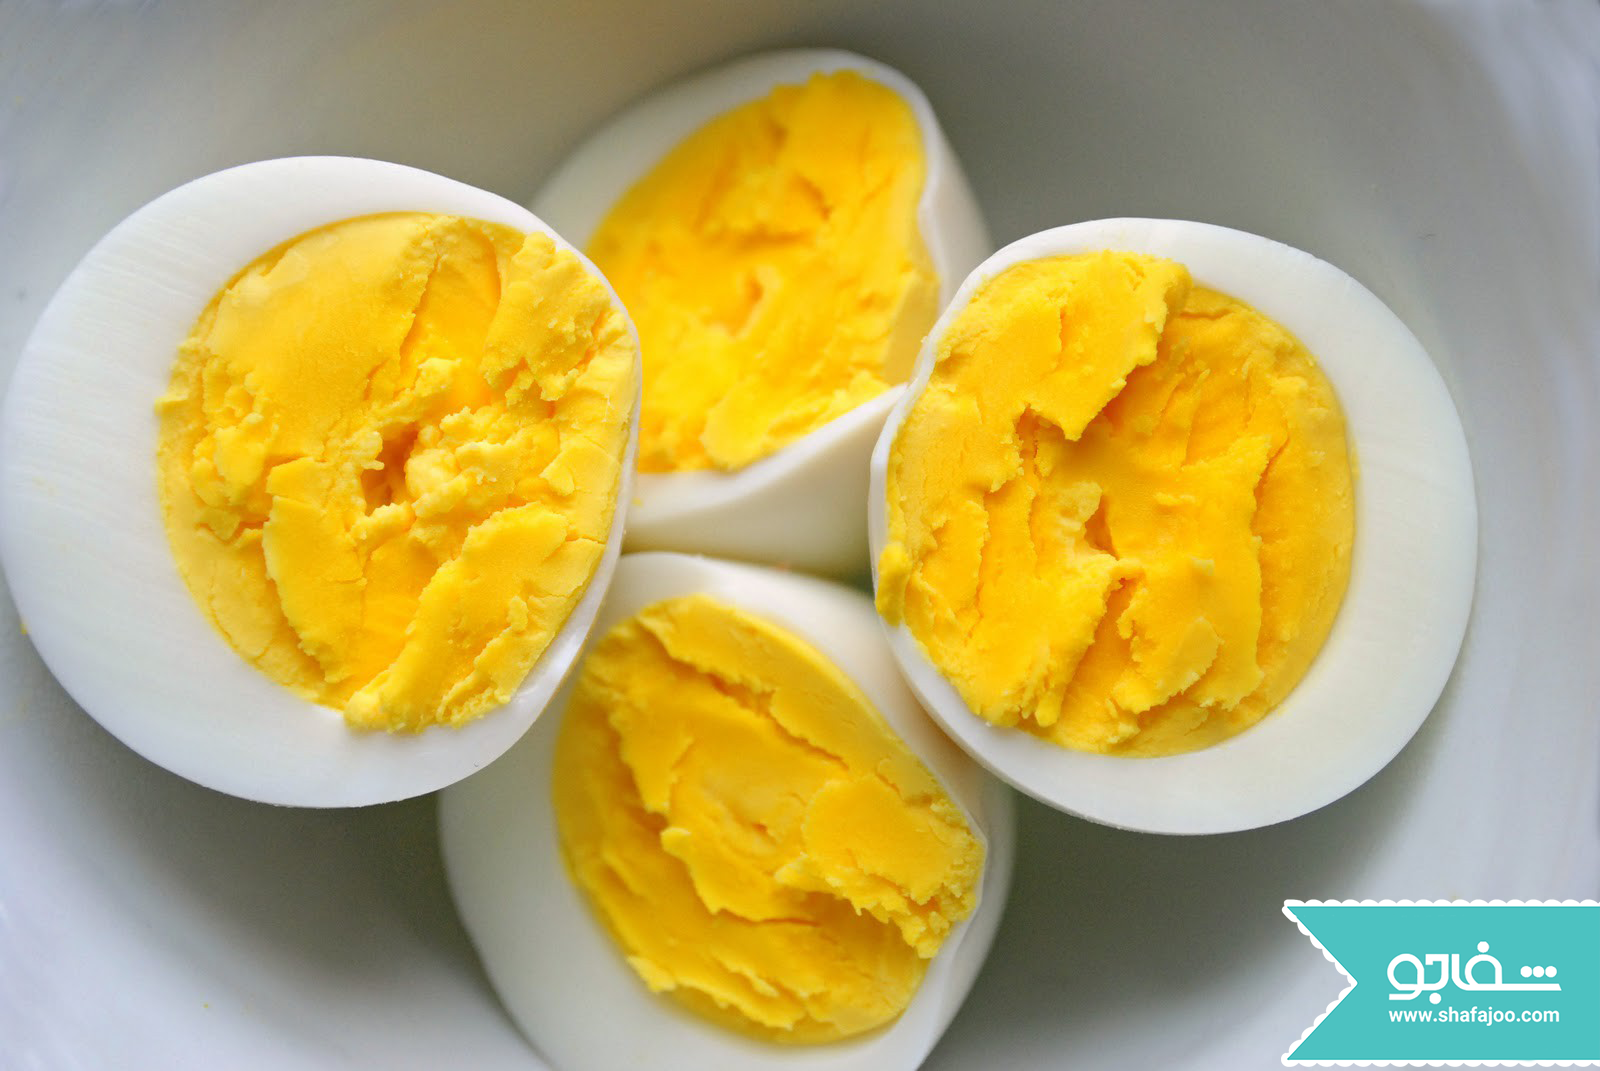 حقایقی در مورد فواید و مضرات مصرف تخم مرغ